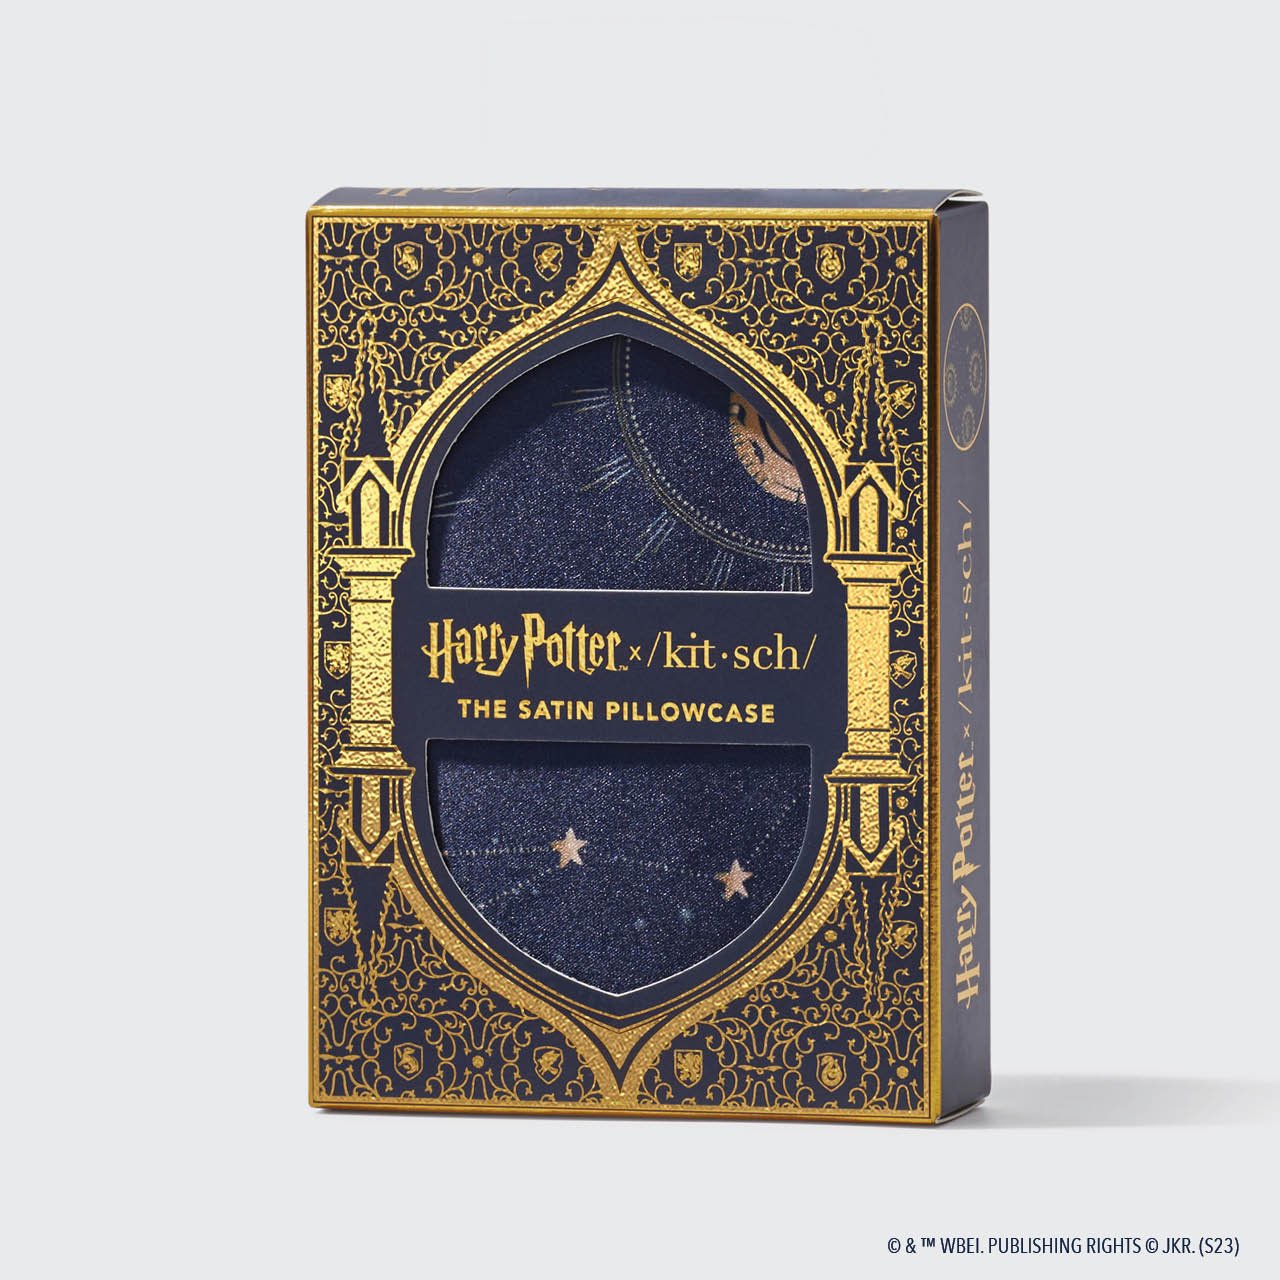 Harry Potter x Kitsch verzamelbundel